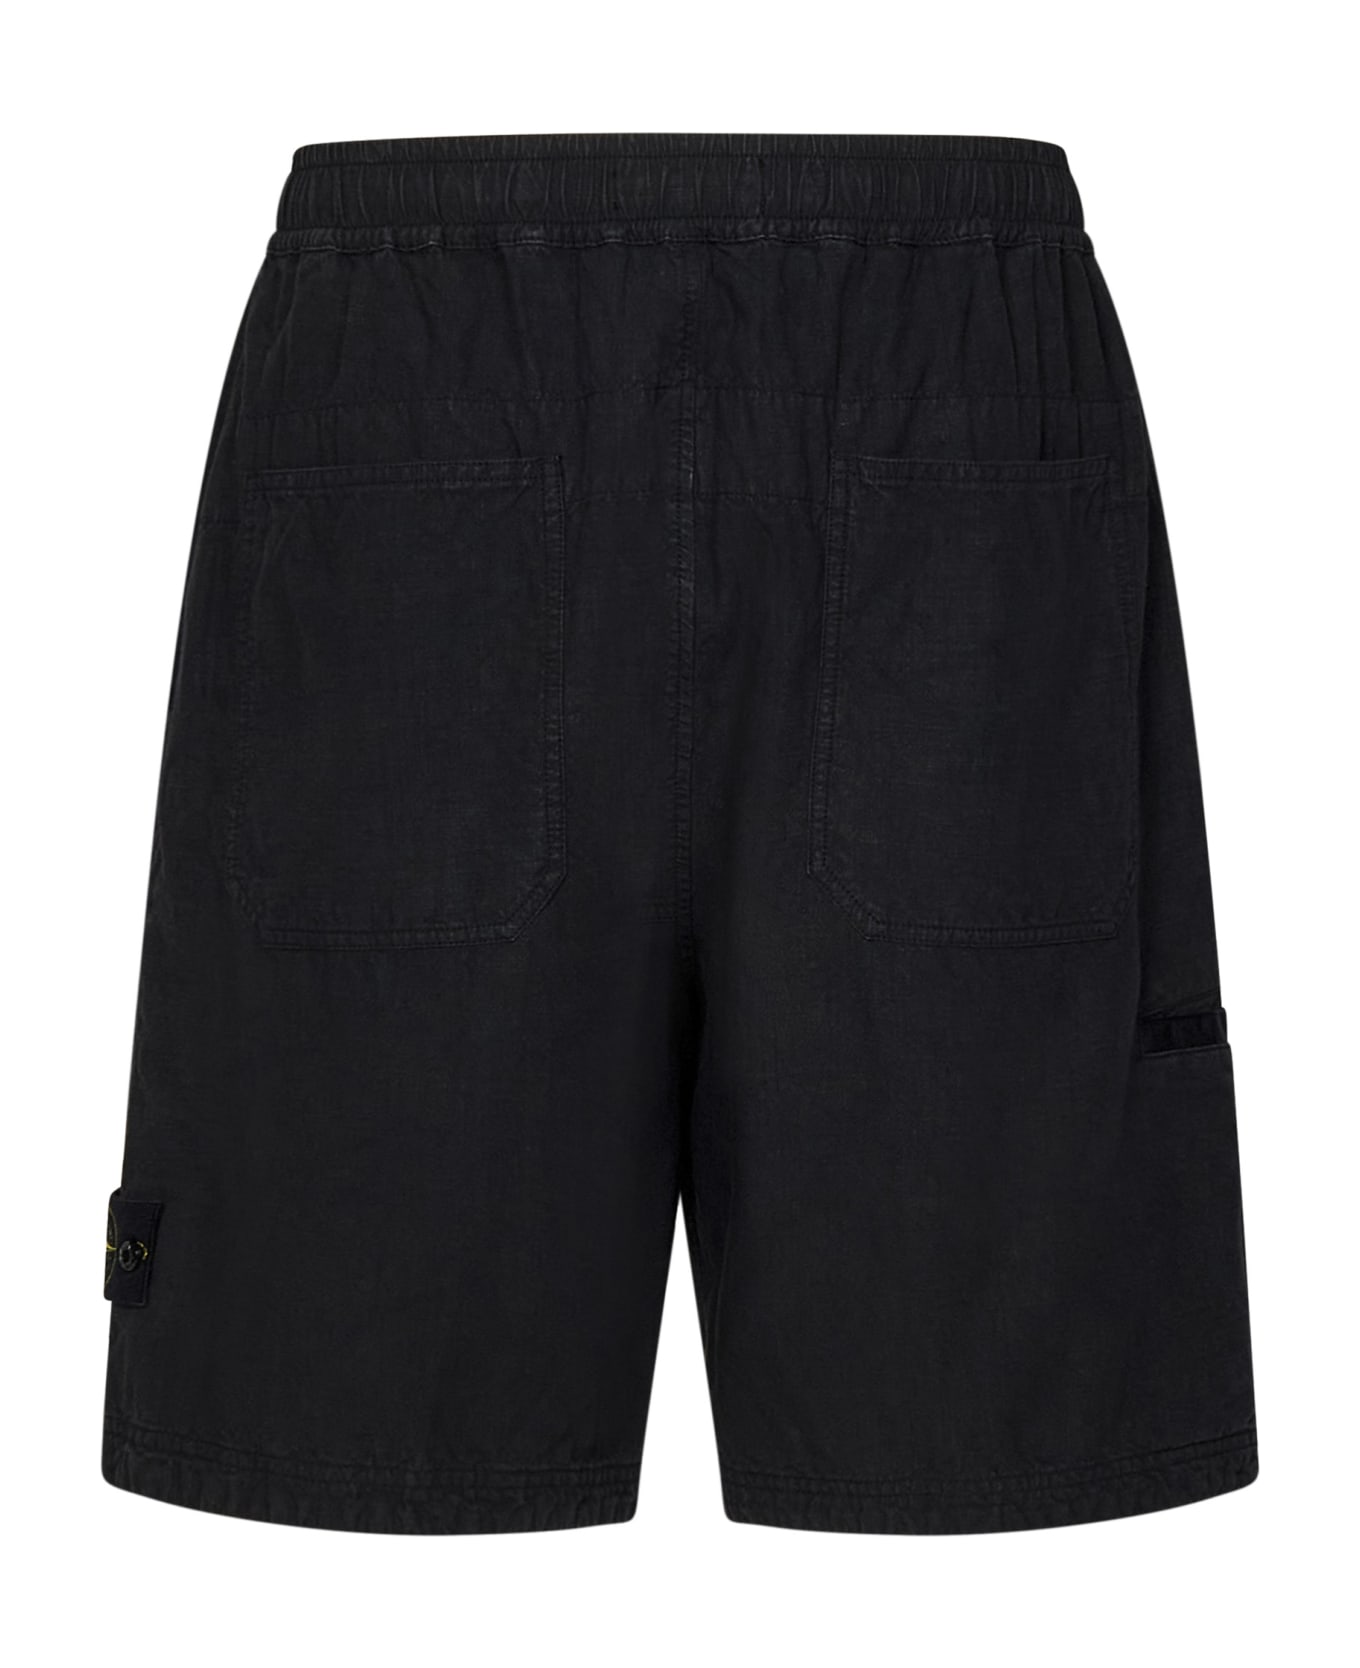 Stone Island Shorts - Black